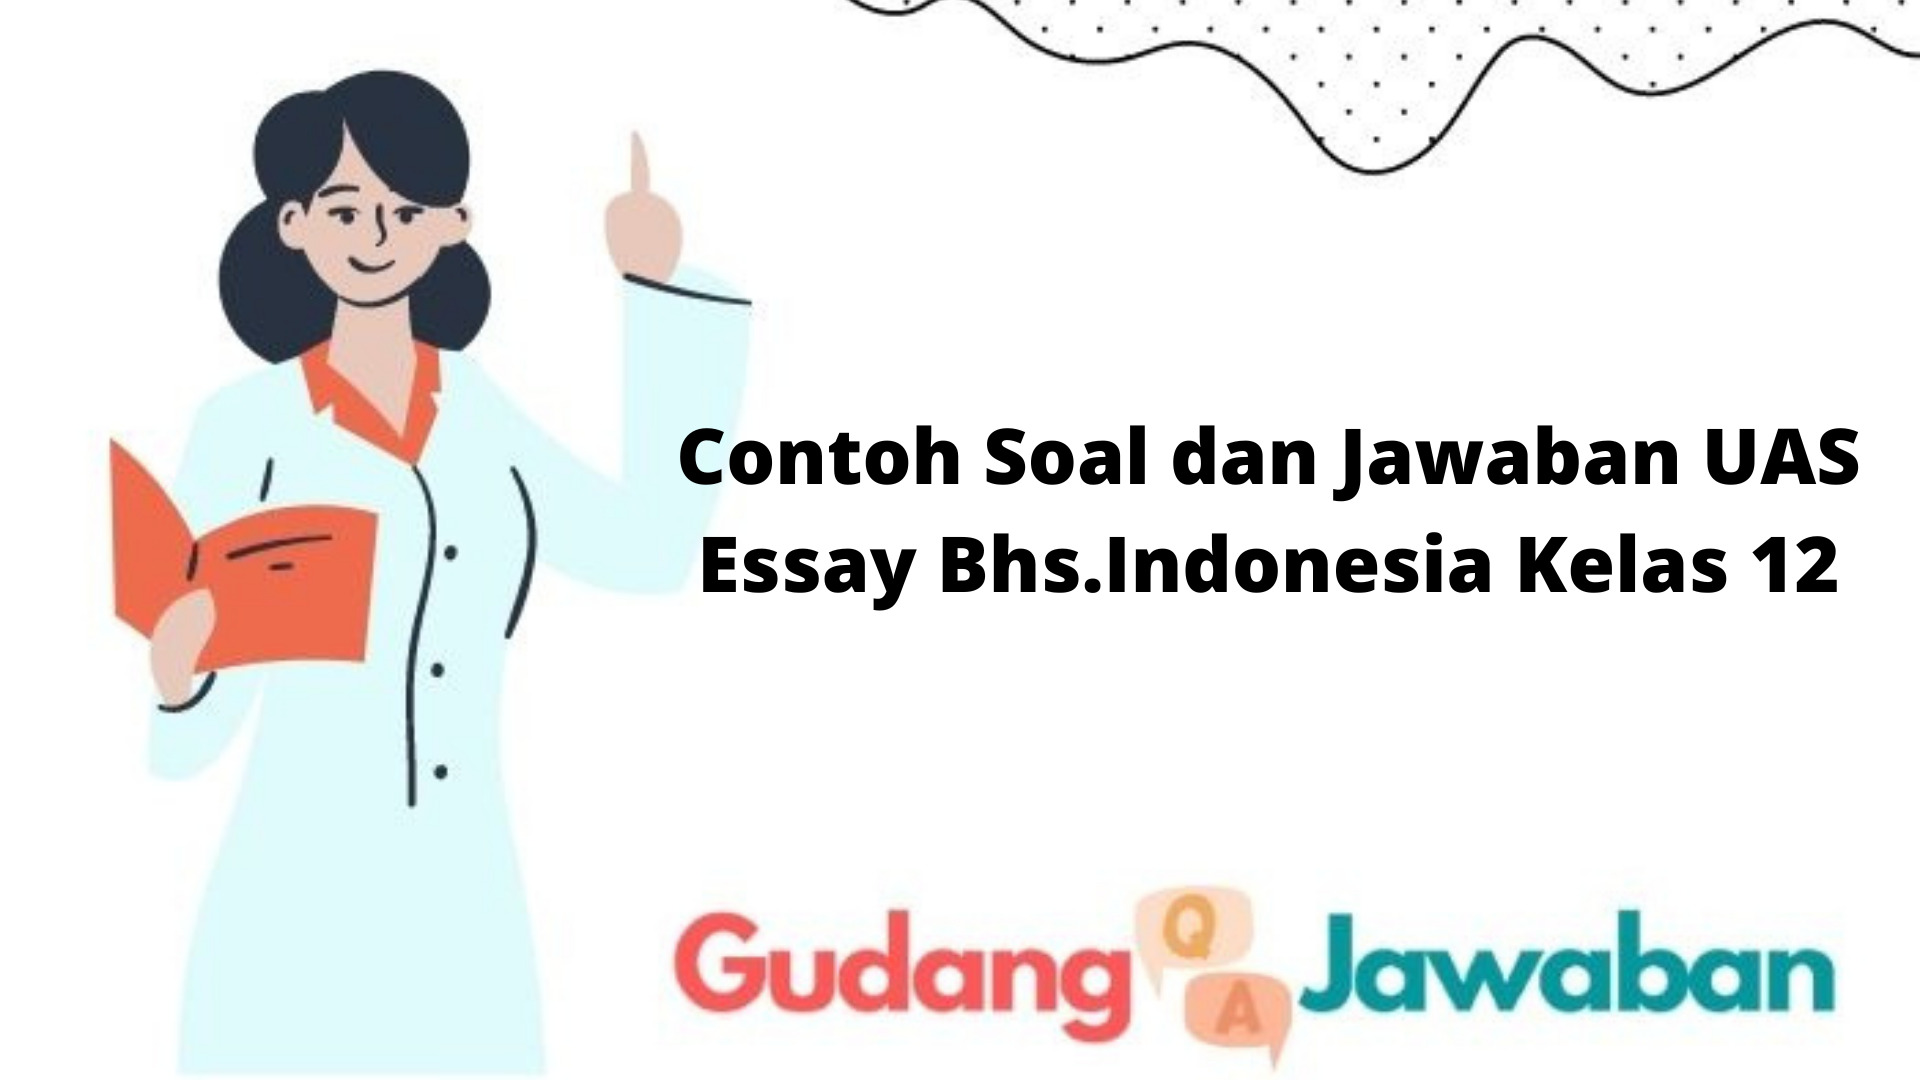 Contoh Soal dan Jawaban UAS Essay Bhs.Indonesia Kelas 12